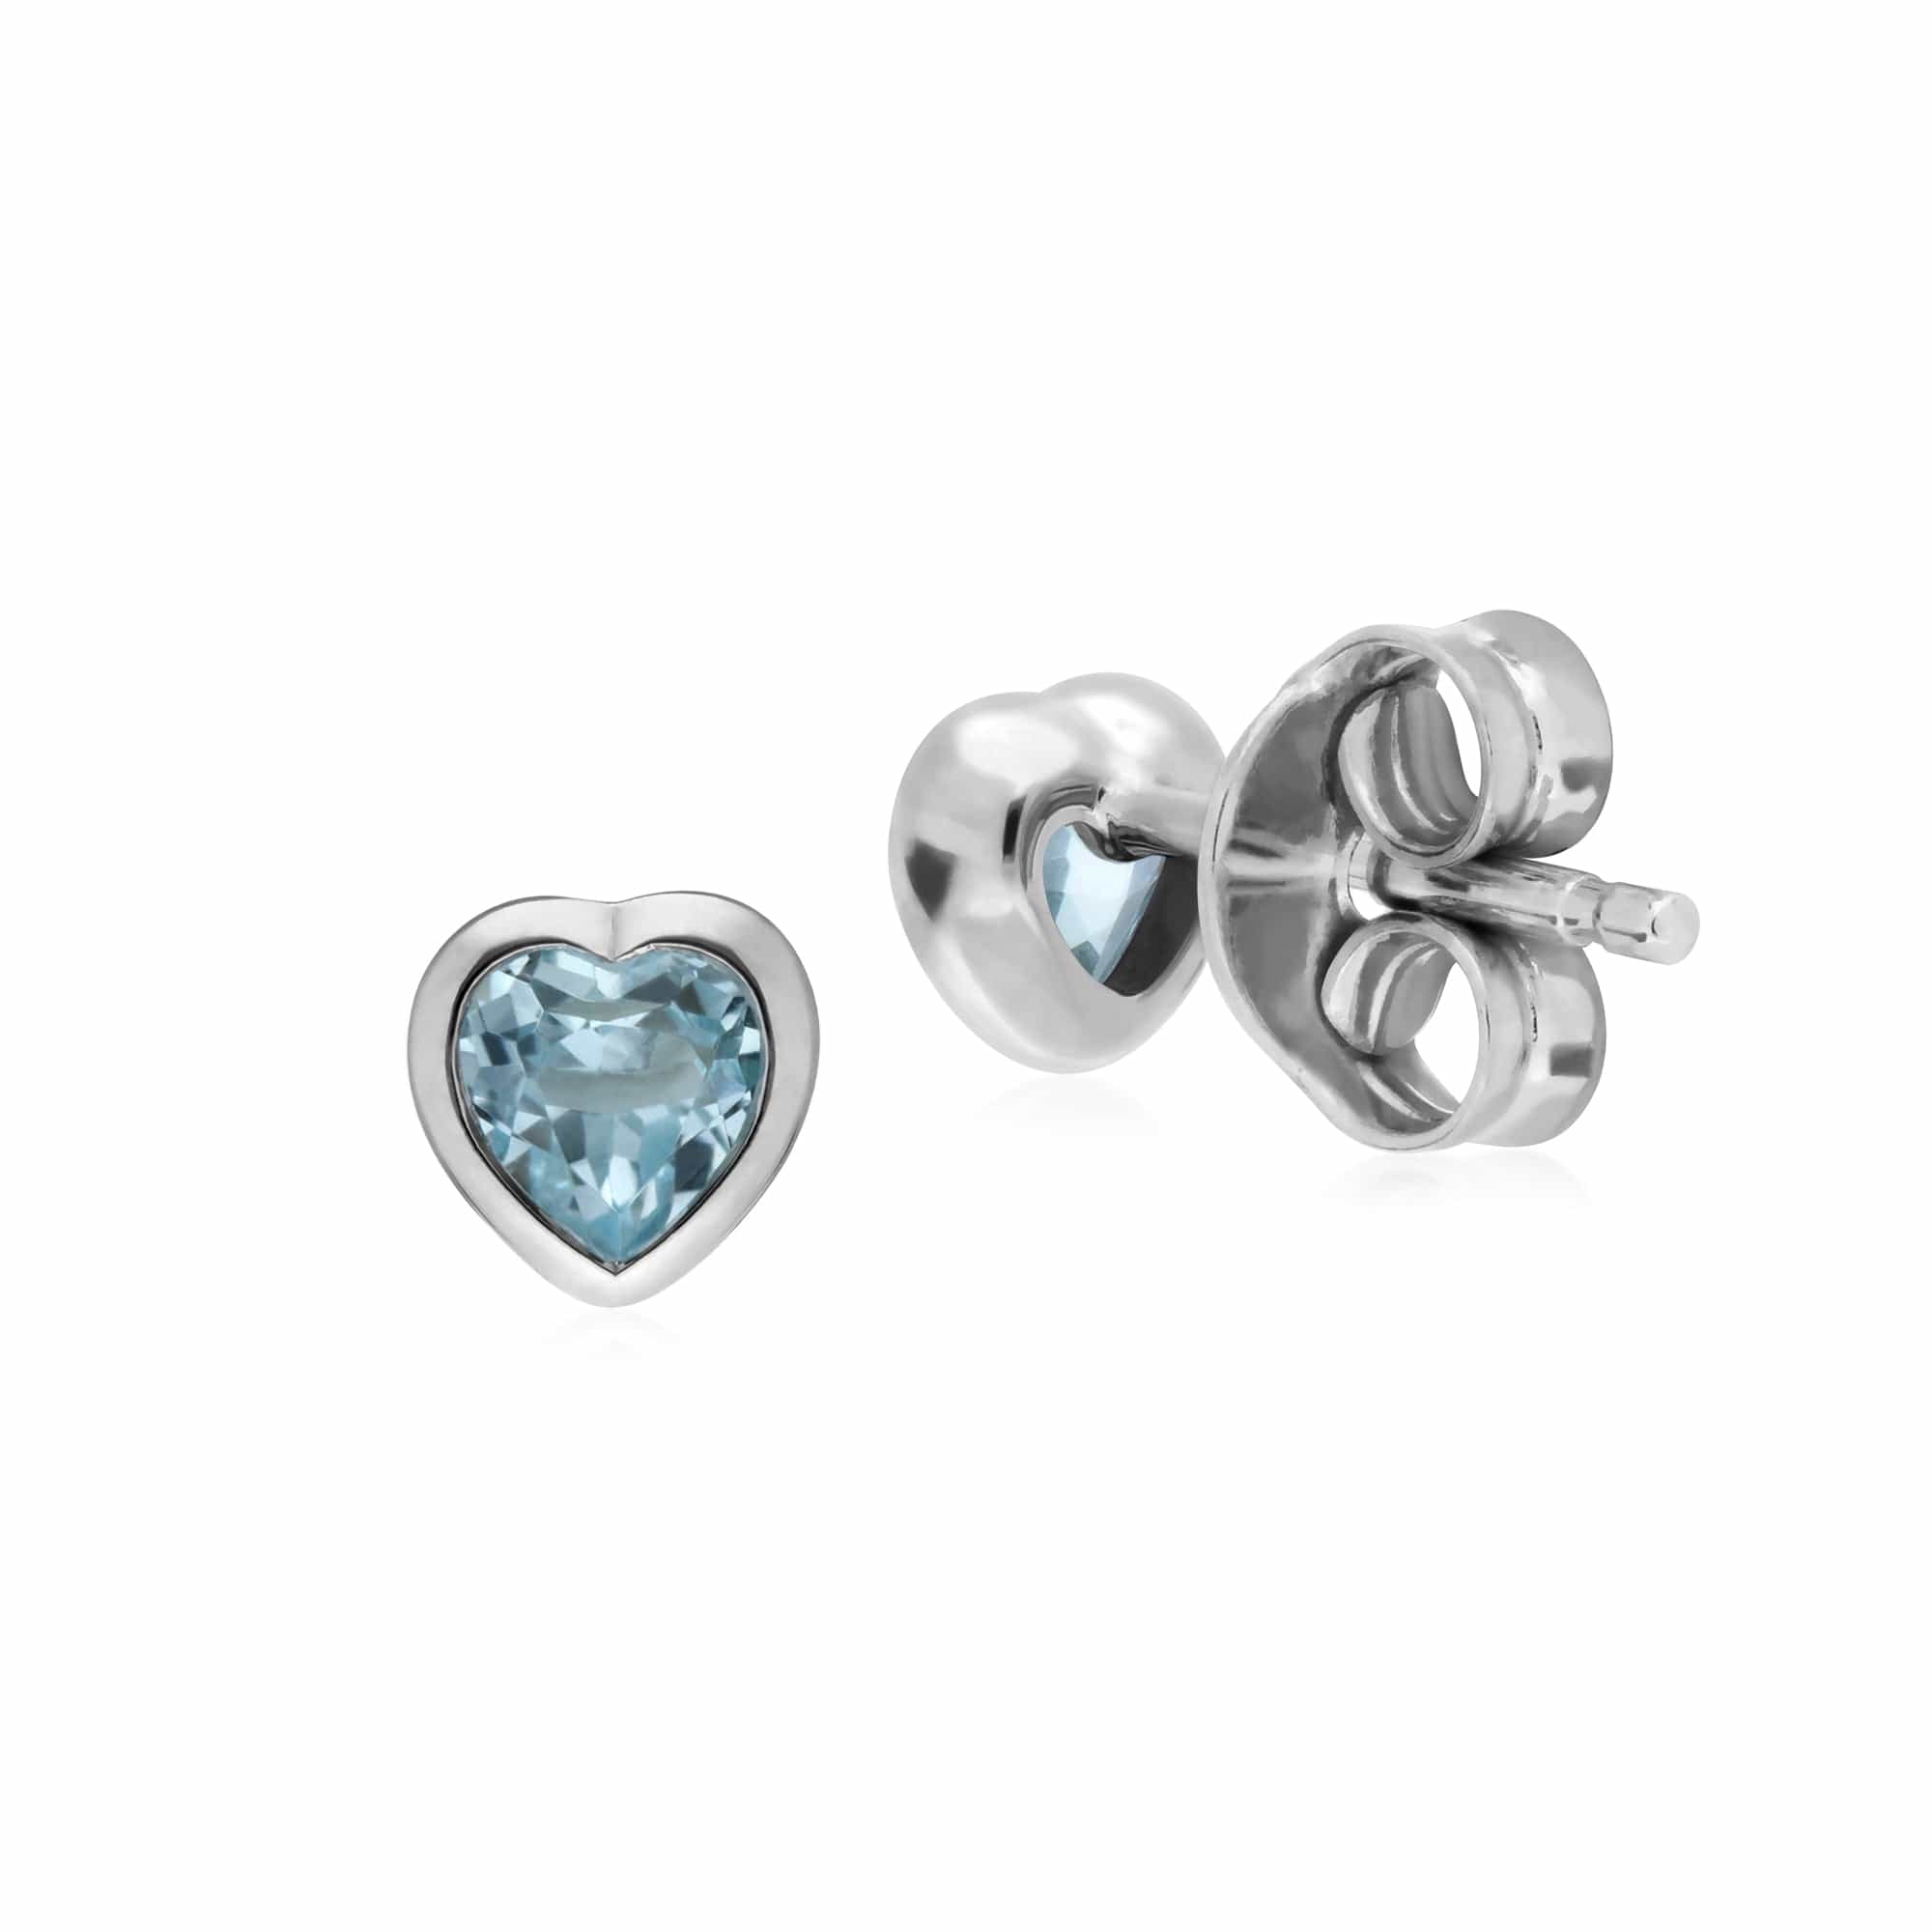 Essential Heart Shaped Blue Topaz Stud Earrings in 925 Sterling Silver 4.5mm - Gemondo